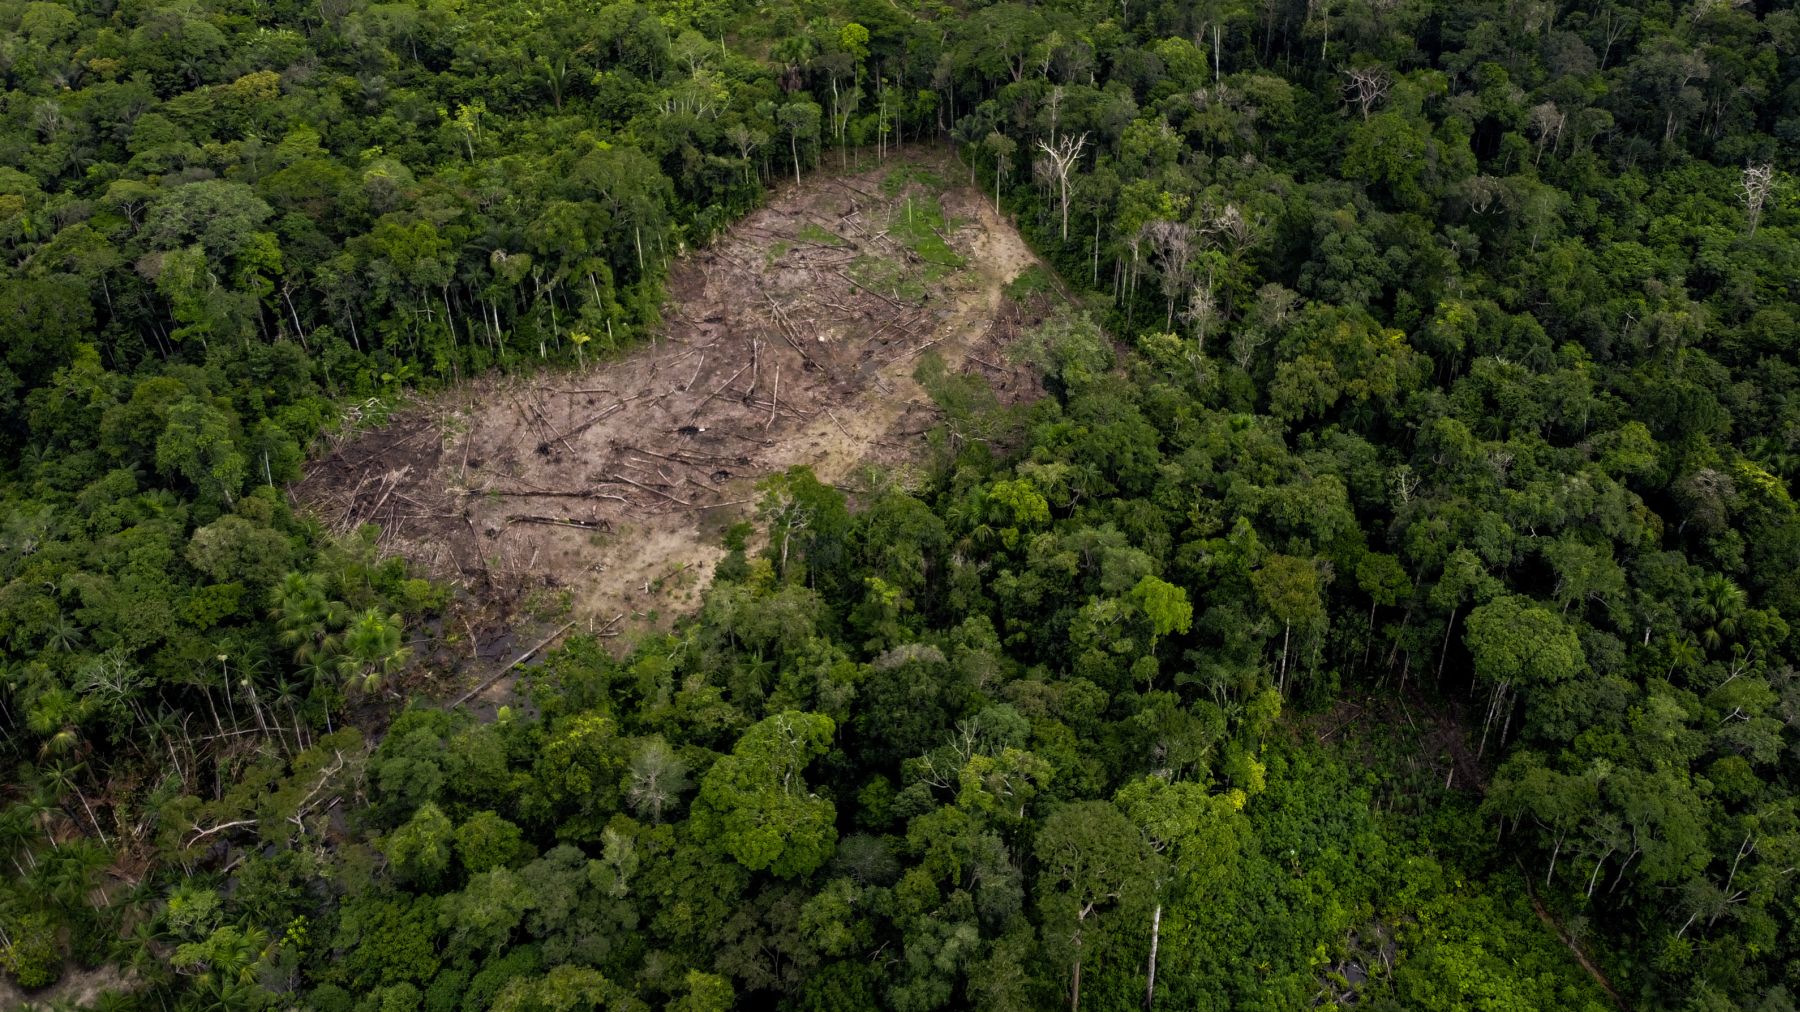 Sikerül-e 2030-ra leállítani az erdőirtást az Amazonas vidékén?